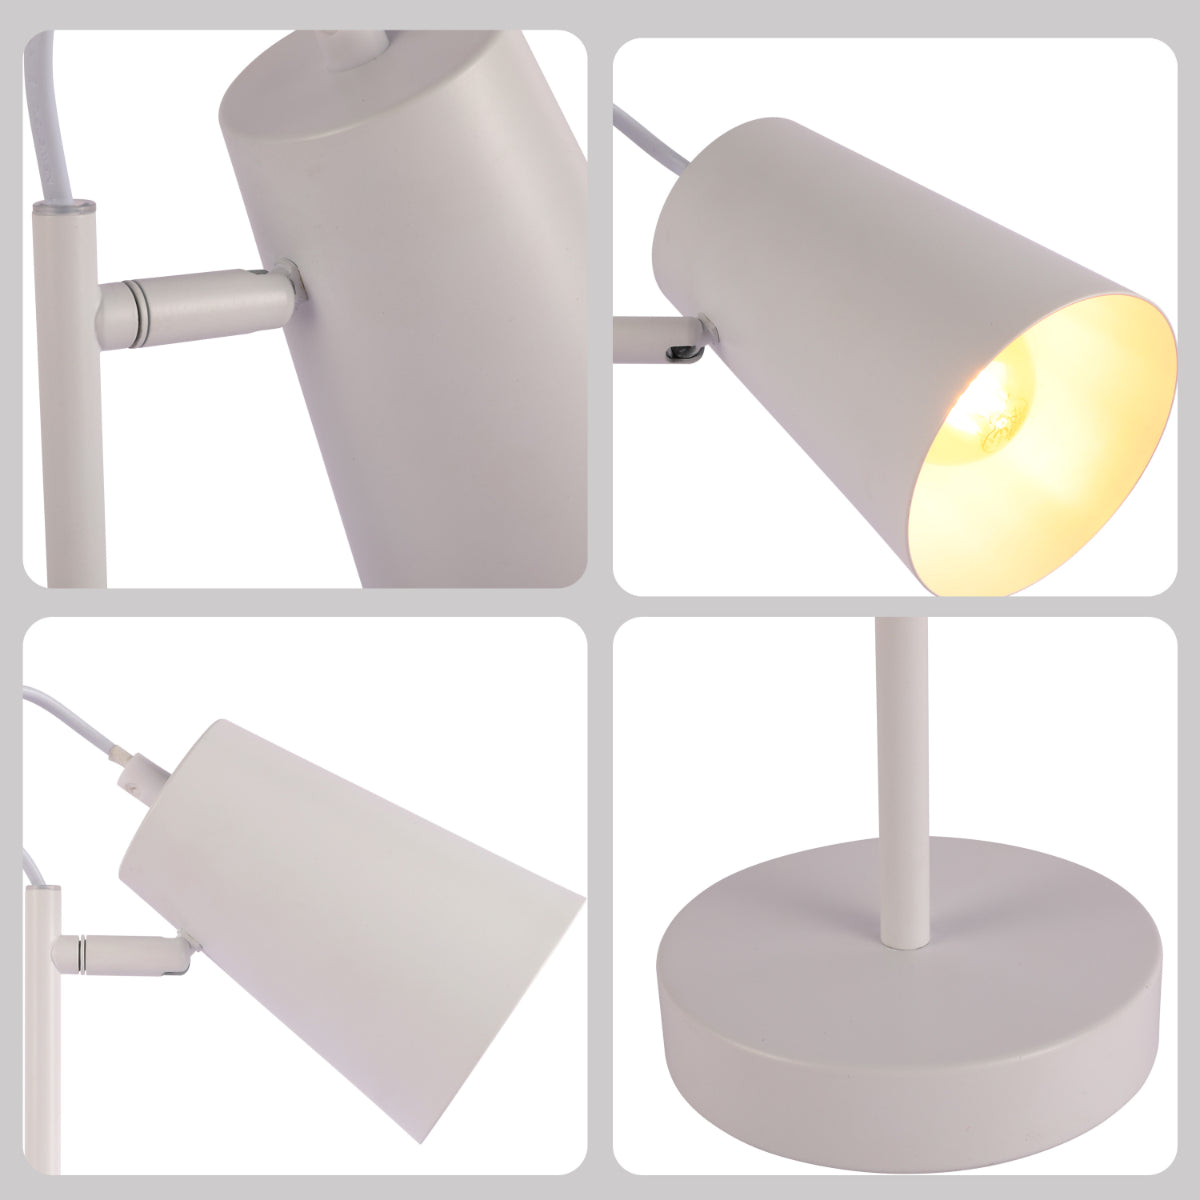 Lighting properties of Sleek Cut Cone Desk Lamp in Vibrant Colors - Modern Elegance 130-03666